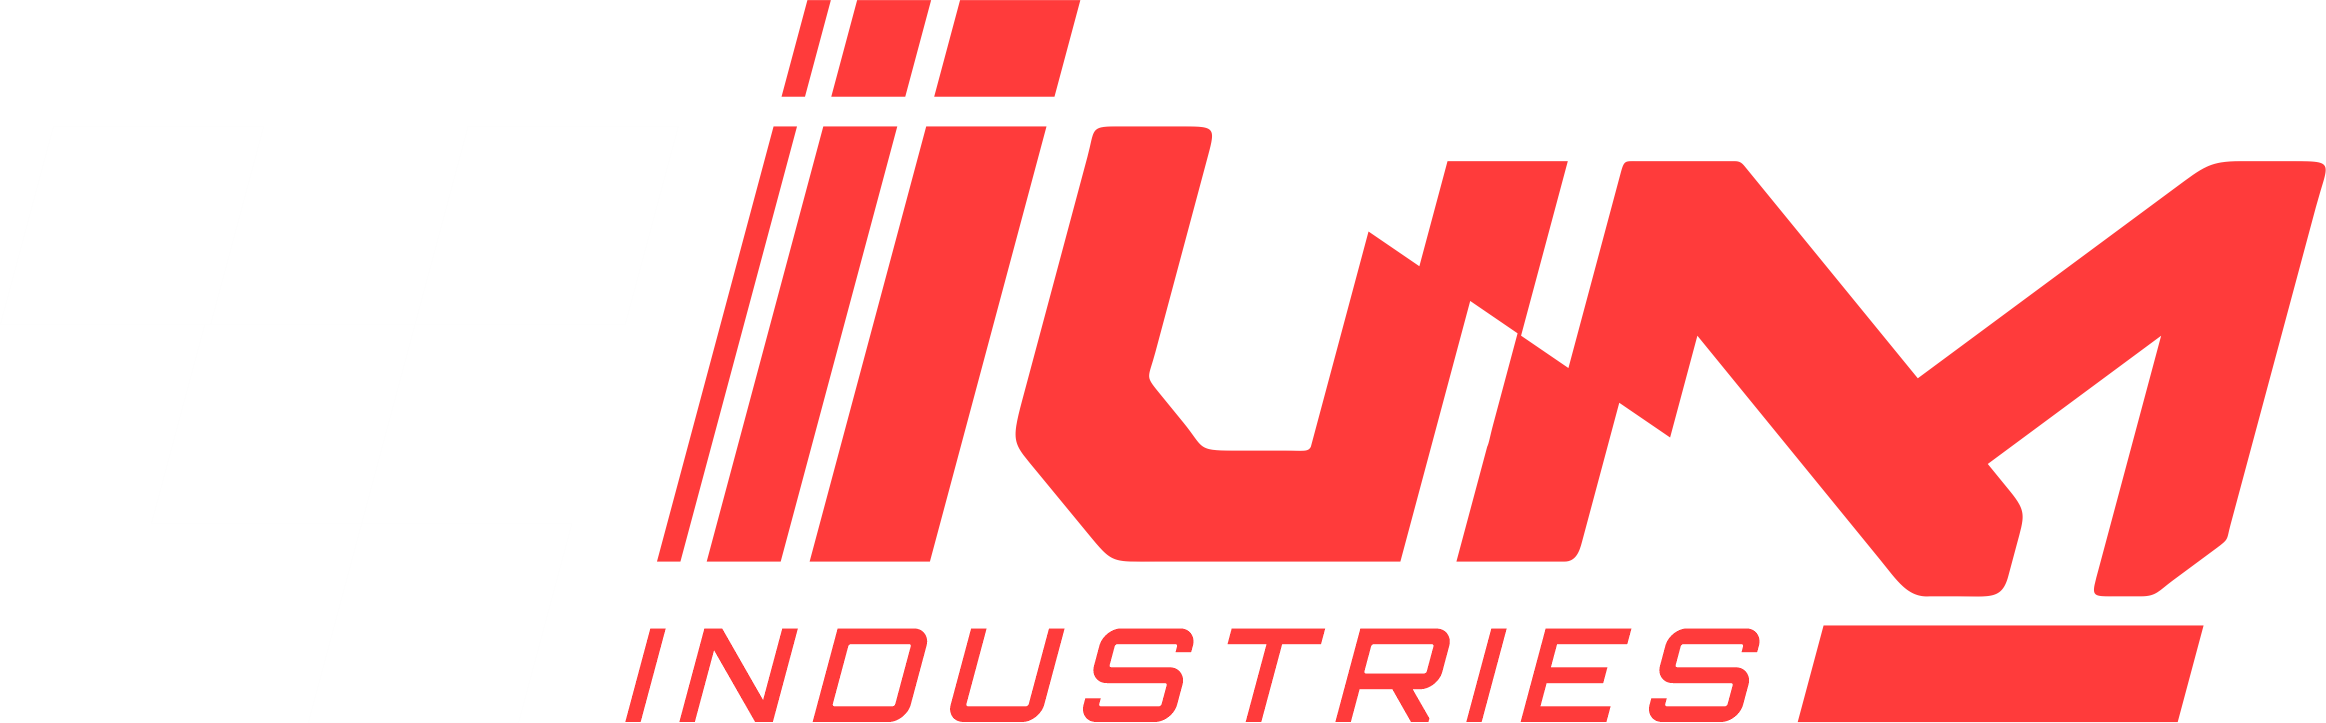 Ium Industries